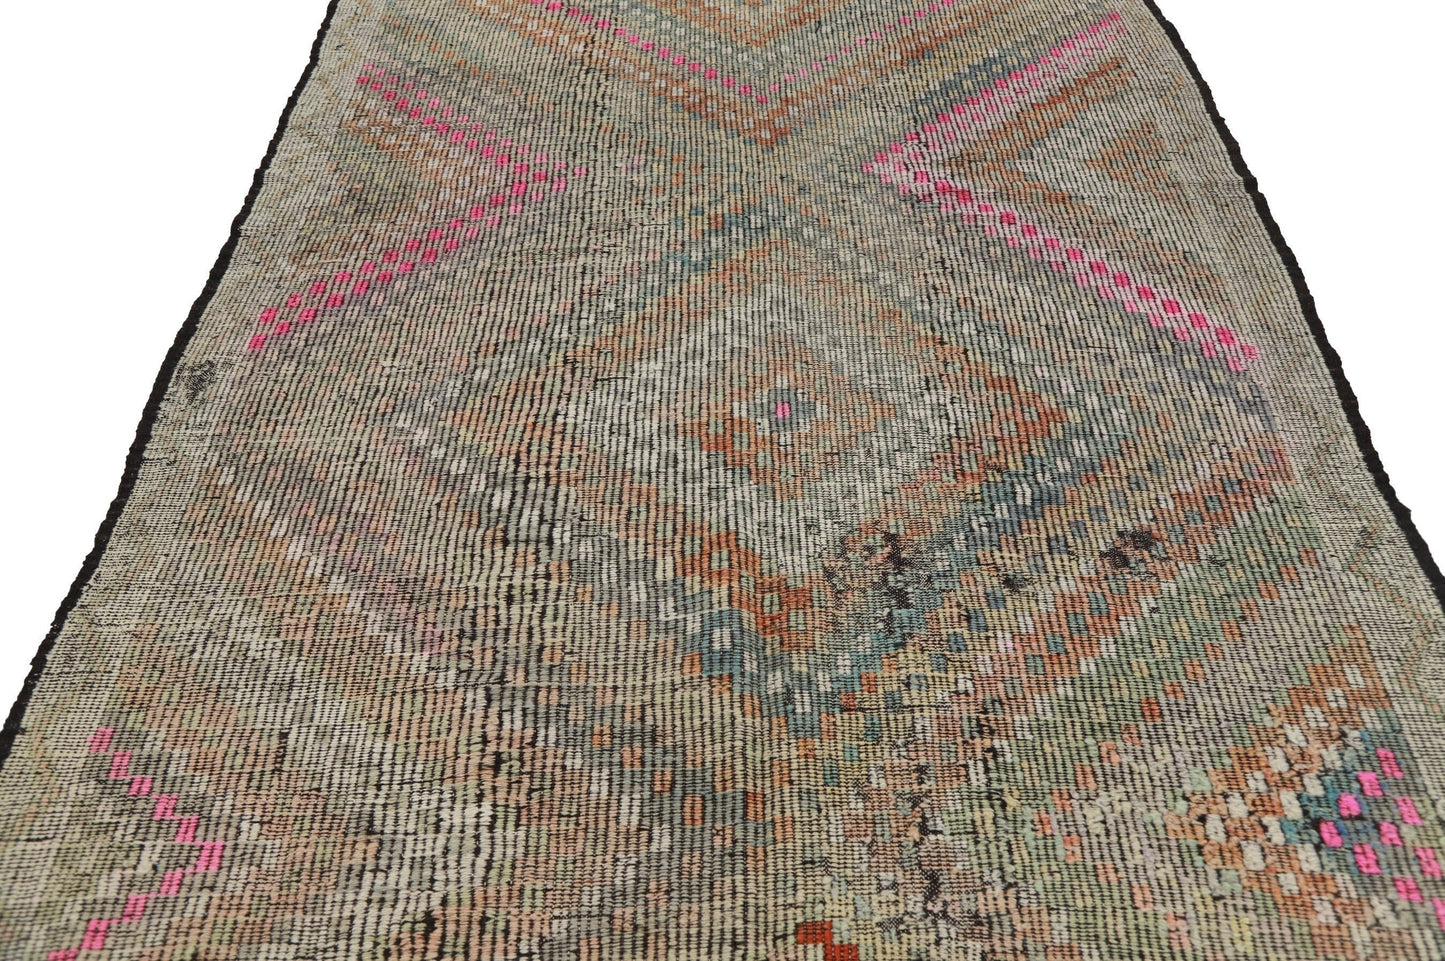 Kilim rug 6x12, Turkish Kilim rug, Vintage Kilim rug, Faded rug, Muted rug, Handmade rug, Pastel rug, Decorative rug, Living room rug, 8167